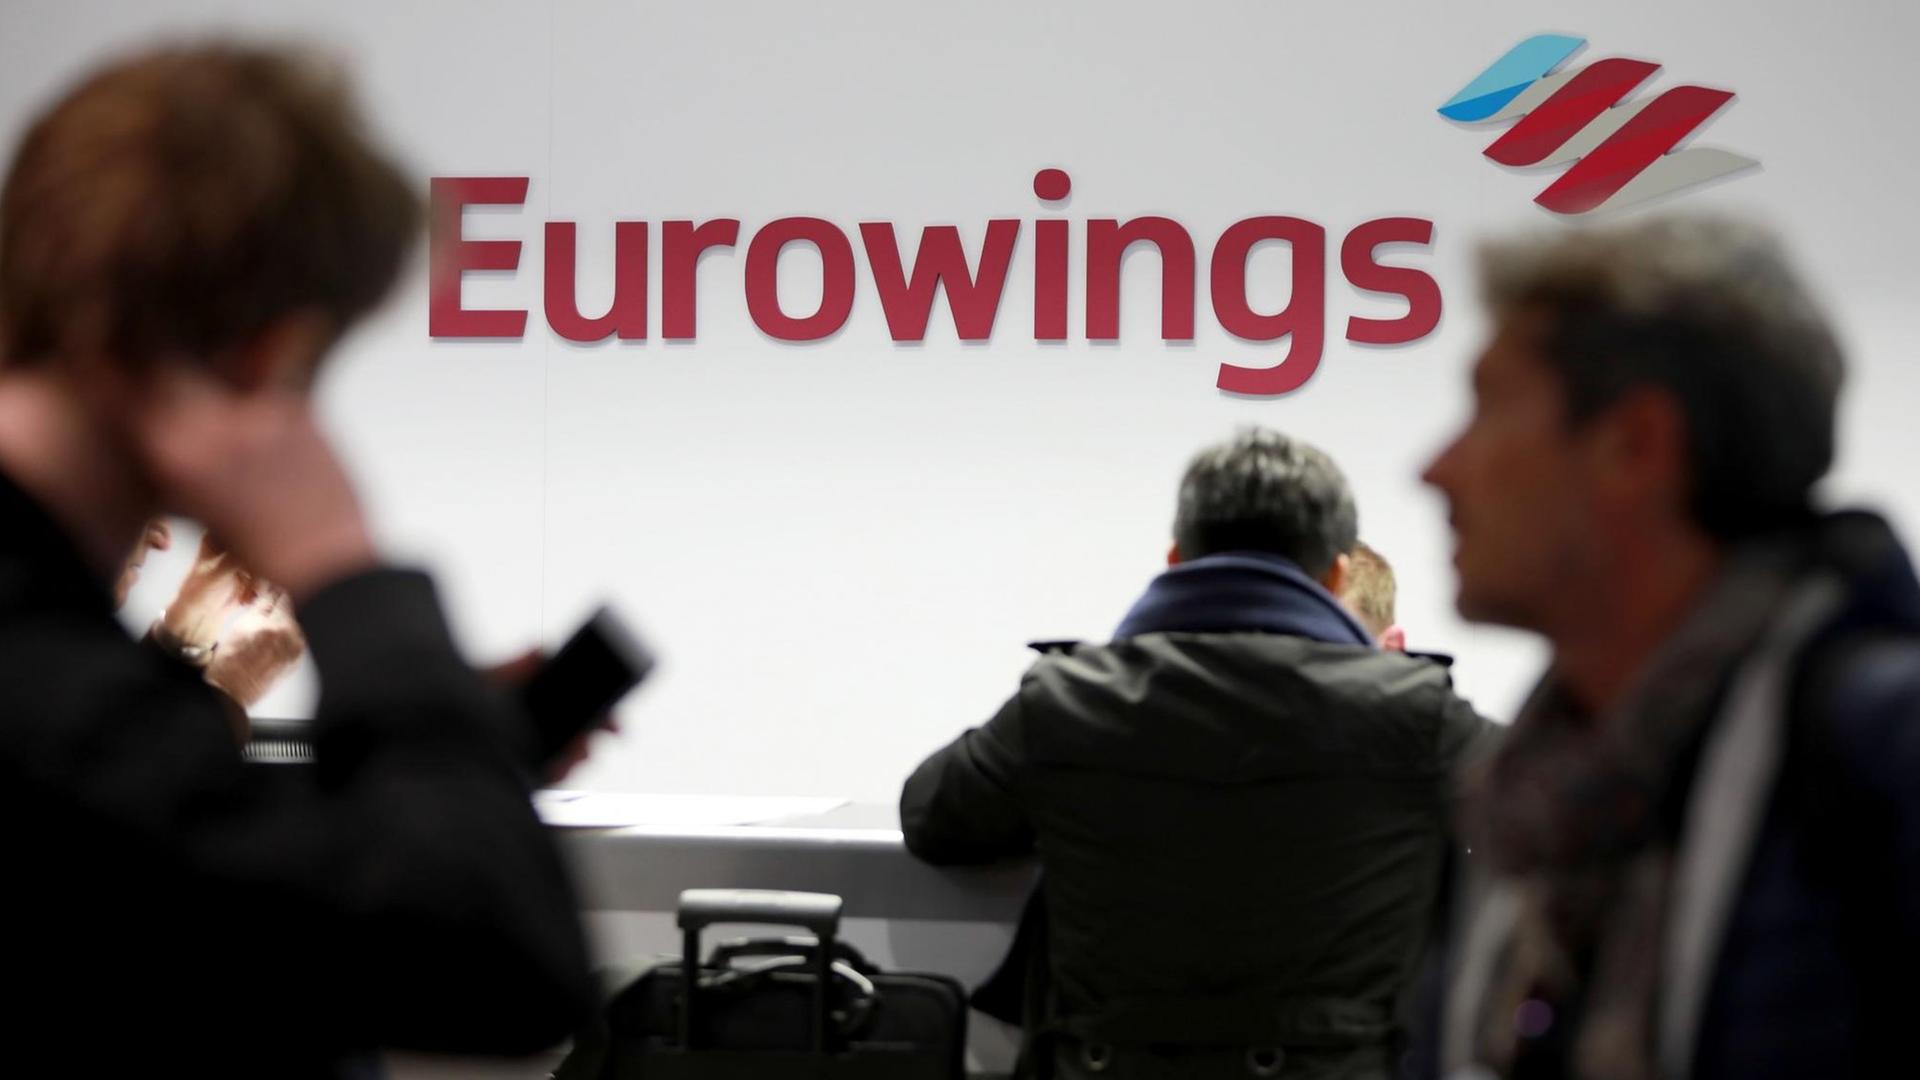 Fluggäste gehen am 21.10.2016 in Köln (Nordrhein-Westfalen) auf dem Flughafen Köln/Bonn zum Schalter der Fluggesellschaft Eurowings.